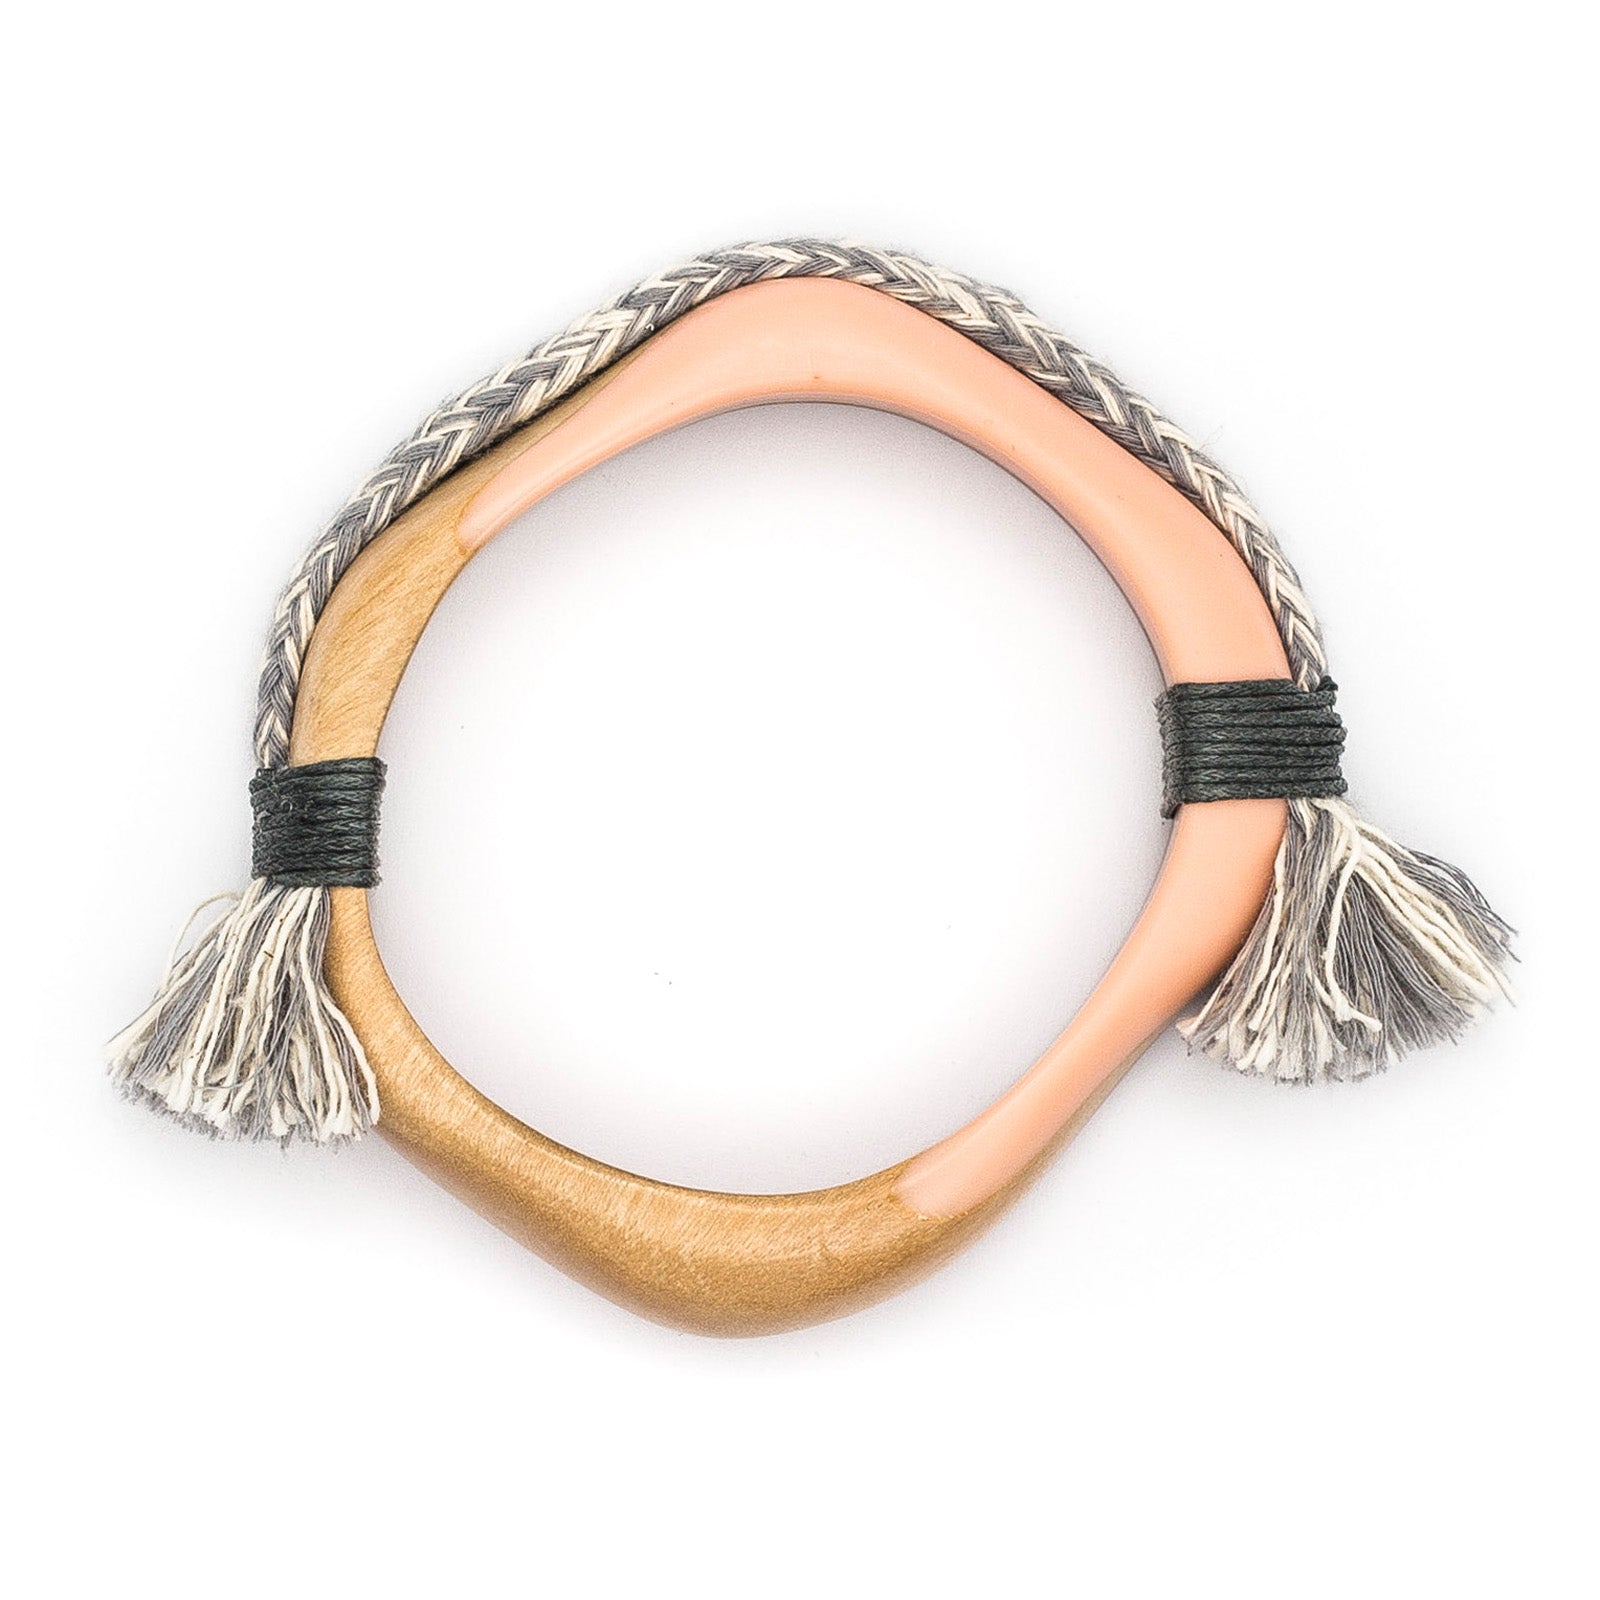 Wood & Resin with Rope & Tassel bracelet